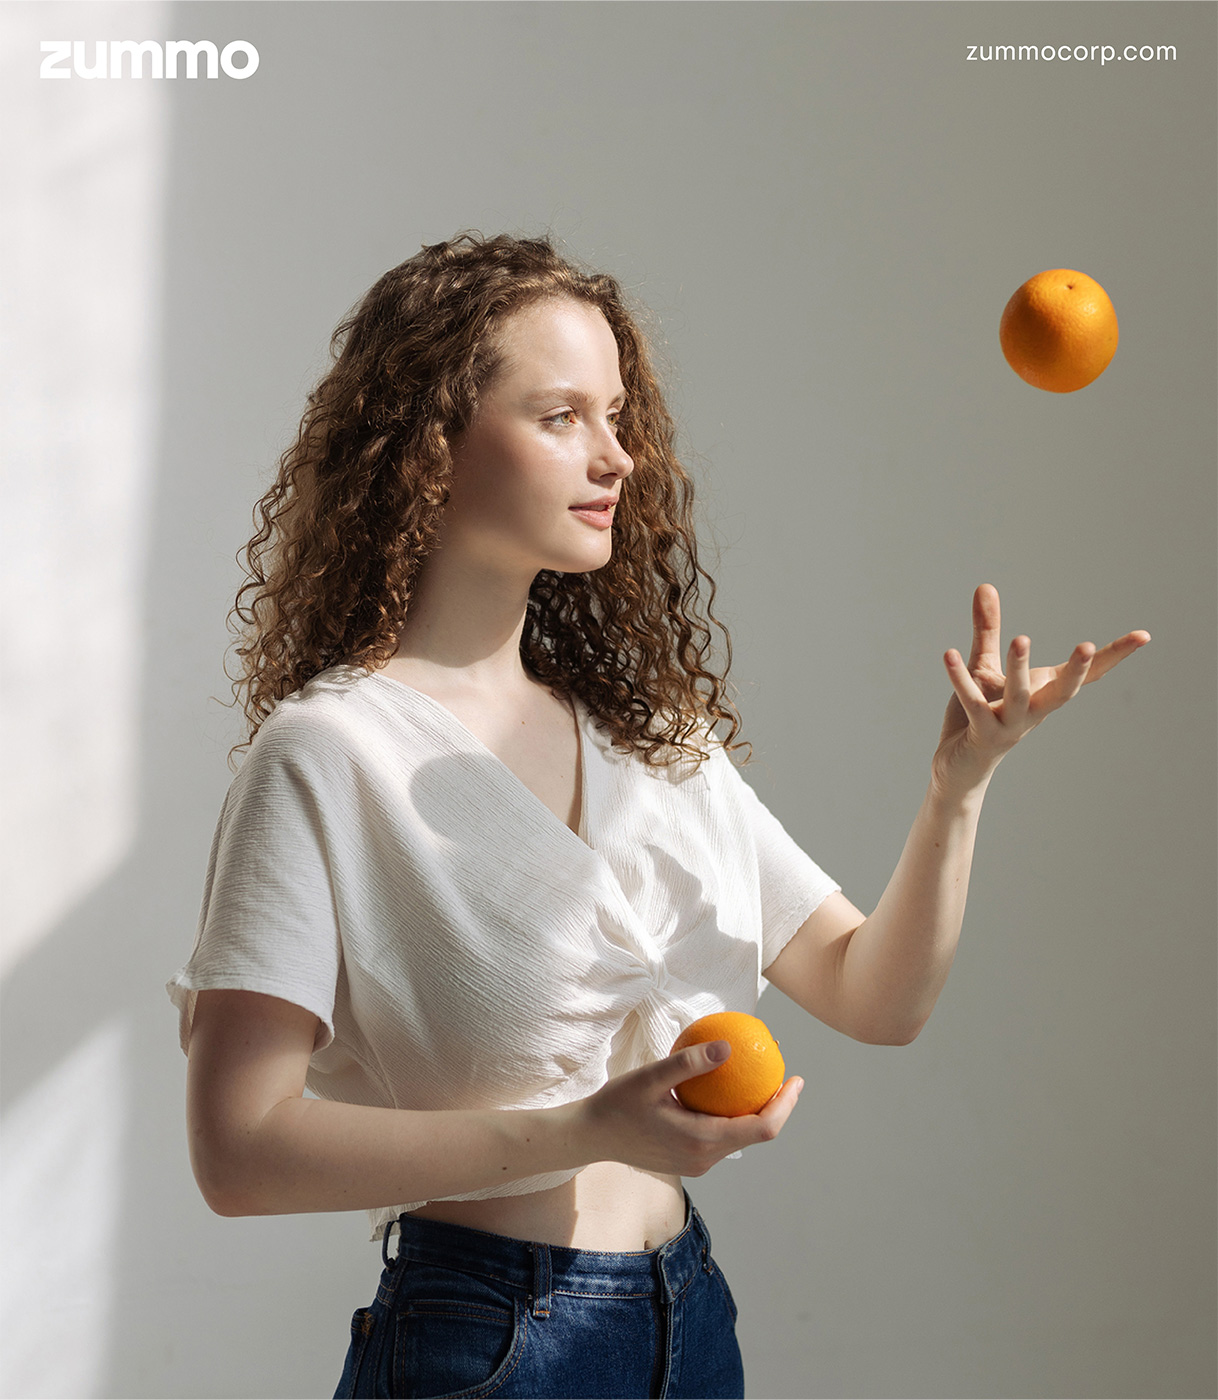 Una joven lanza al aire una naranja mientras con la otra sostiene una segunda naranja